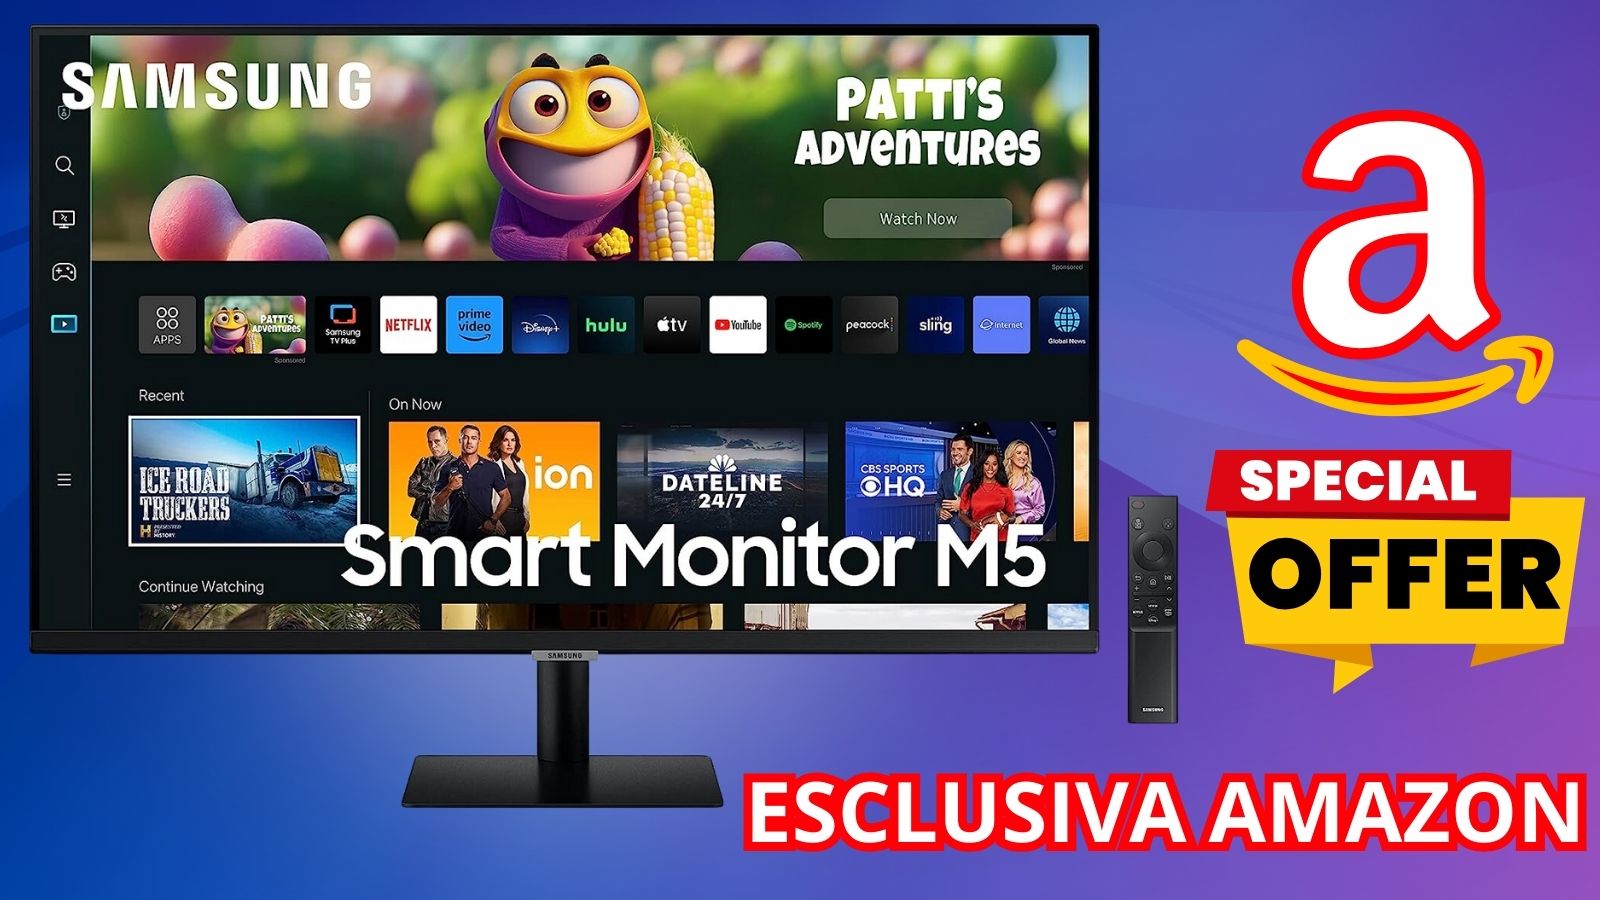 ESCLUSIVA AMAZON: Samsung Smart Monitor M5 al 35% di sconto